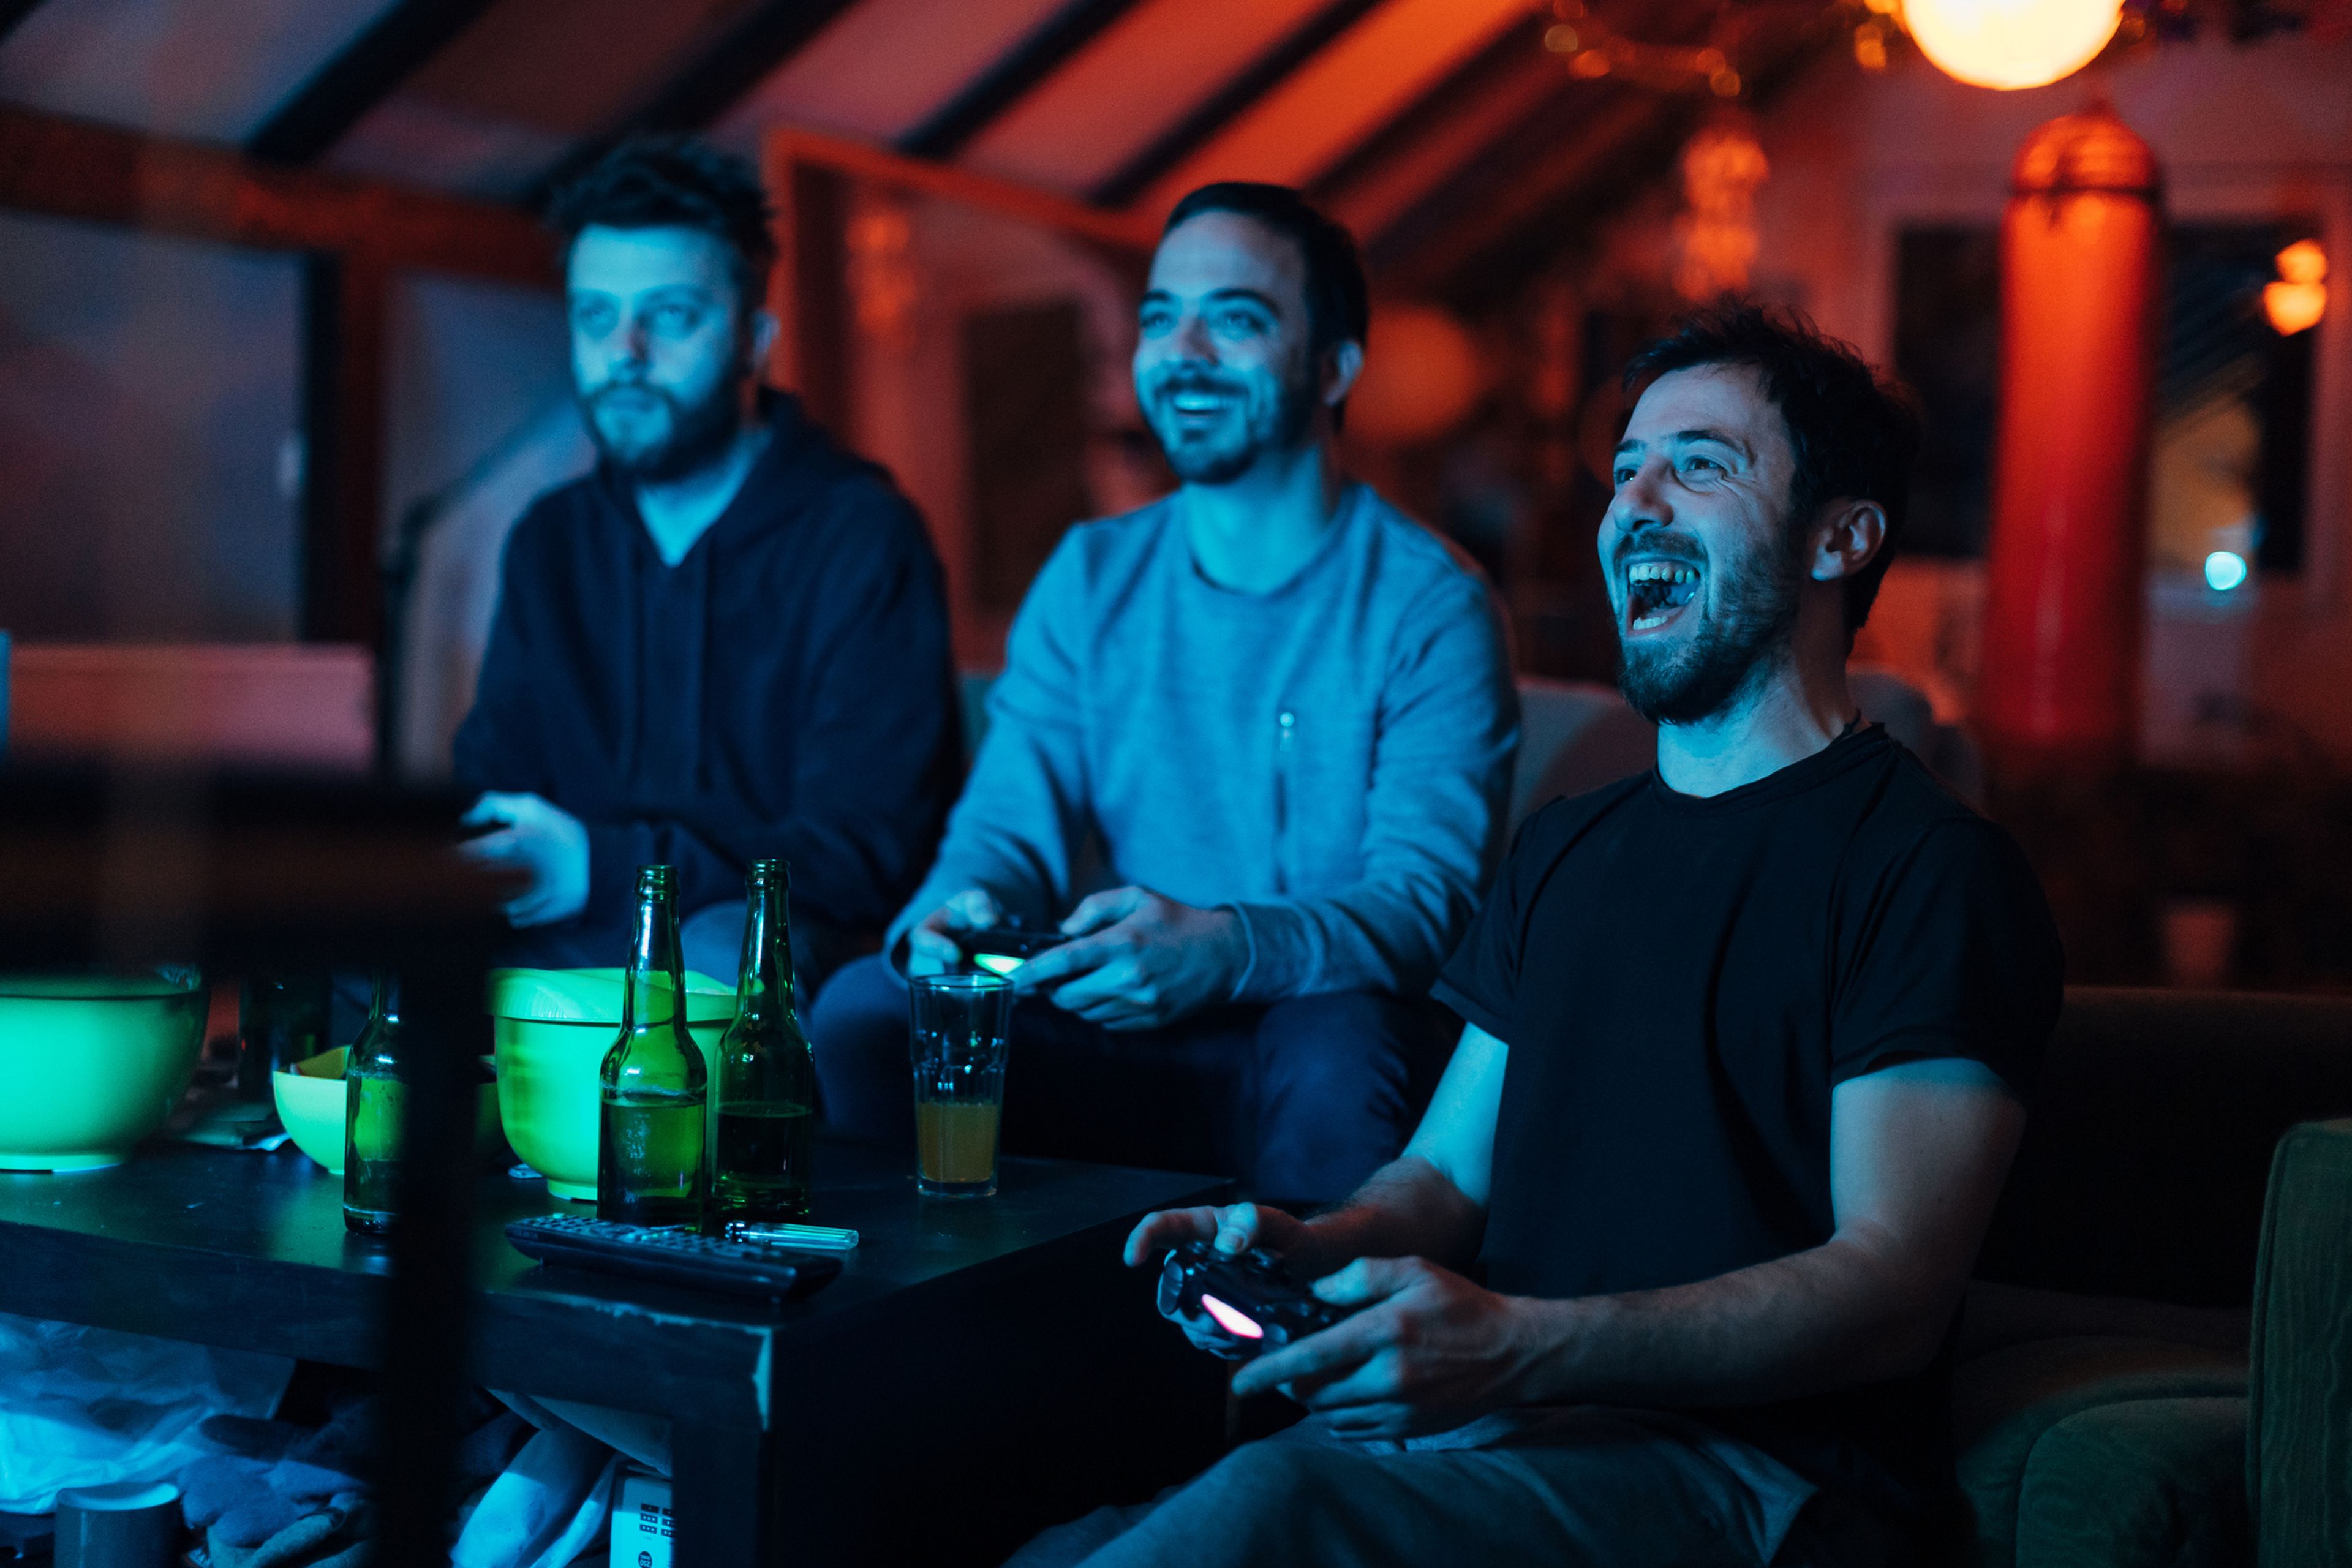 Los videojuegos no son dañinos para la salud mental, revela un estudio |  Business Insider España